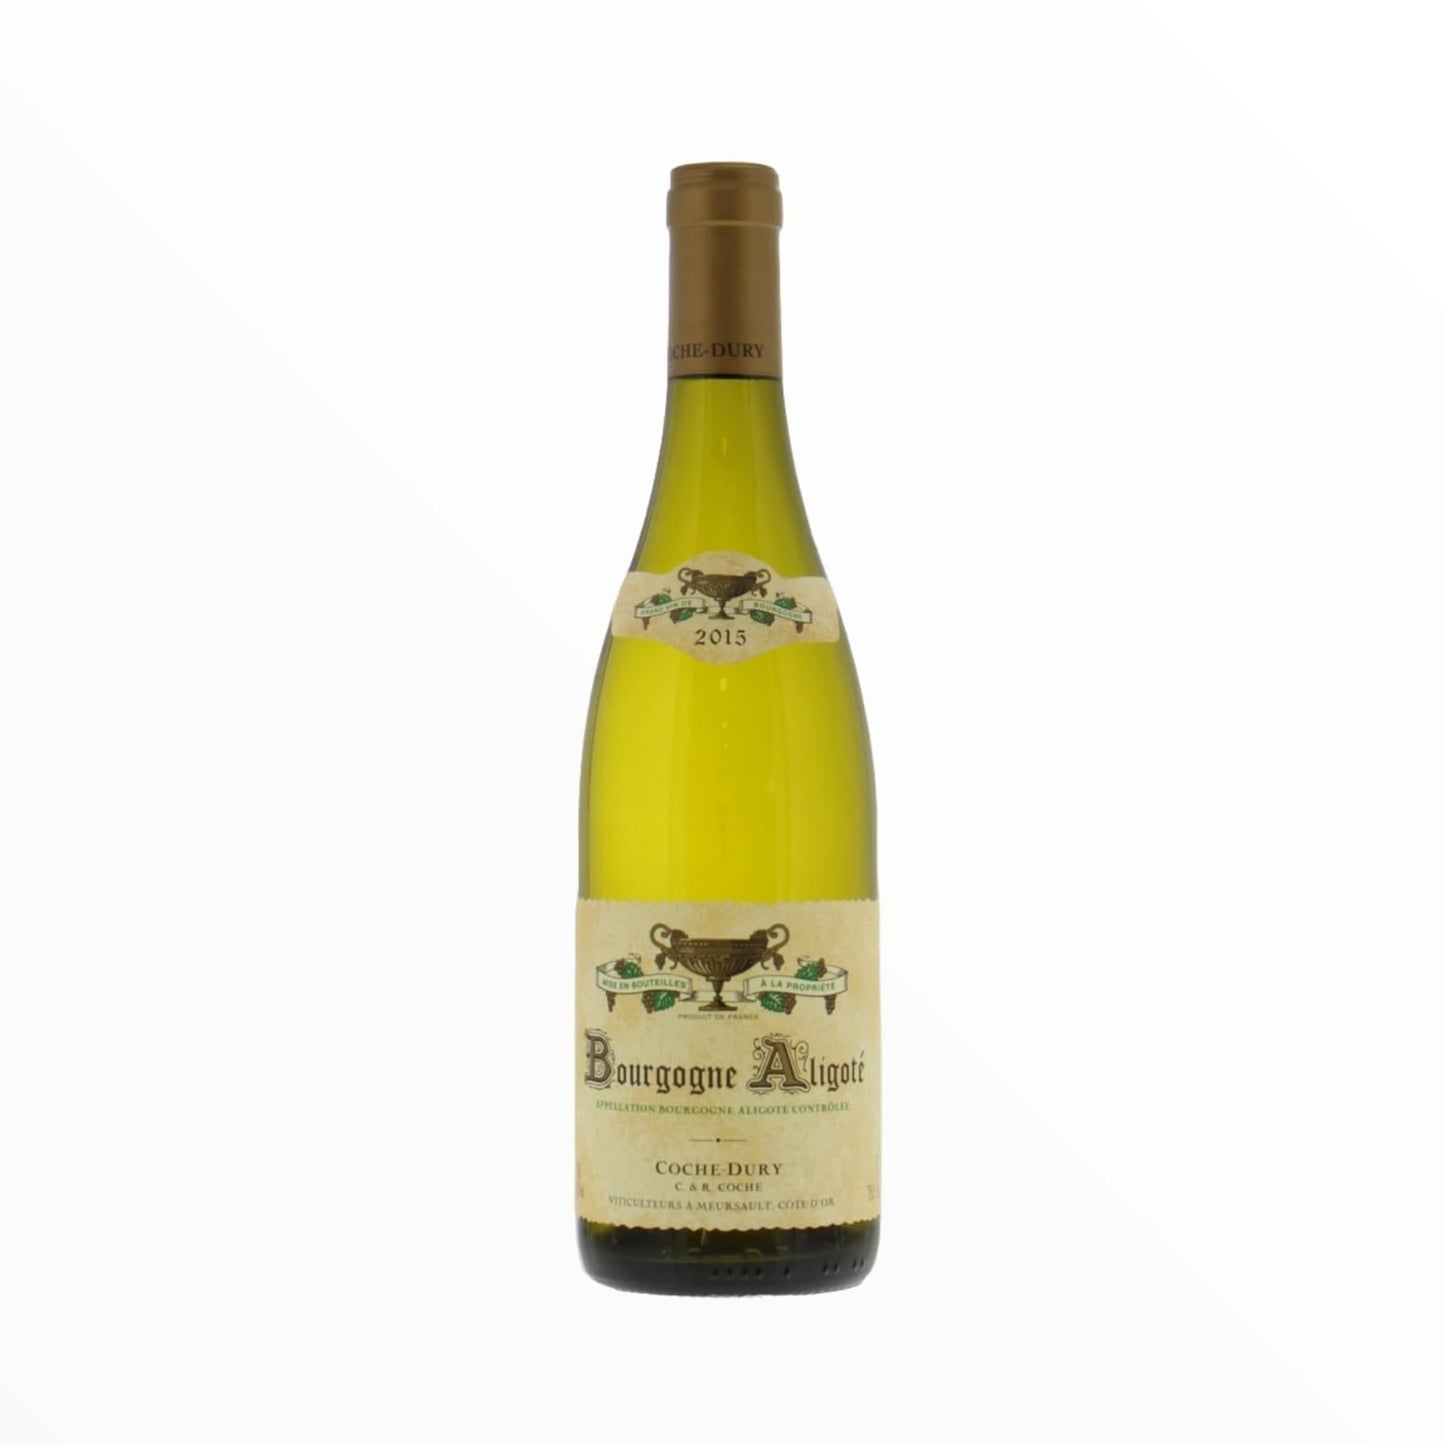 2015 Coche Dury, Bourgogne Aligote 750ml